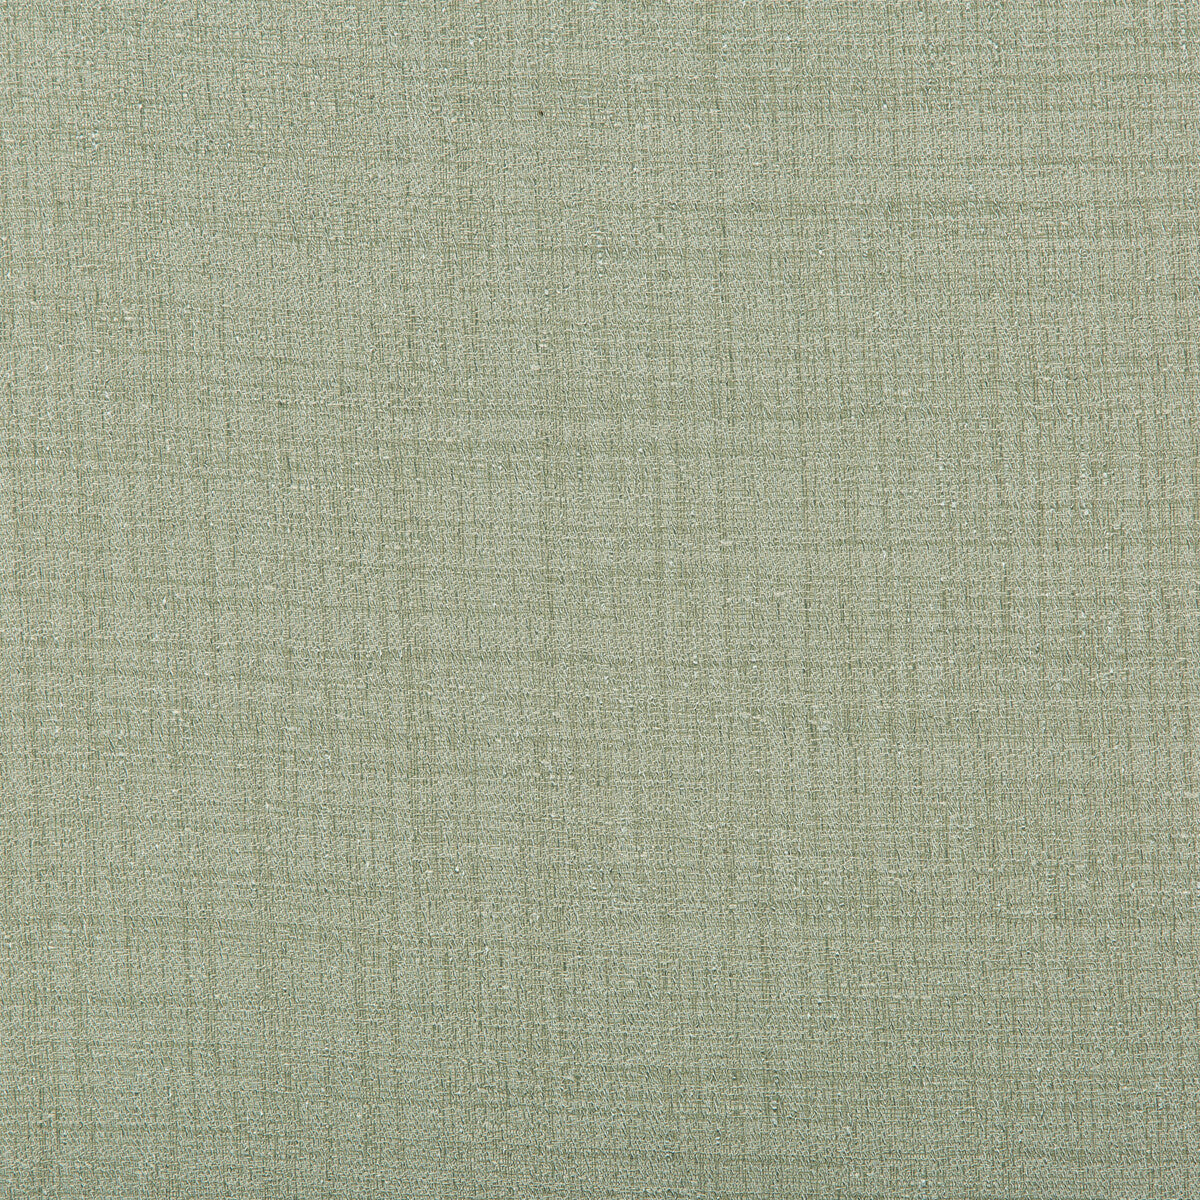 Kravet Basics fabric in 9789-35 color - pattern 9789.35.0 - by Kravet Basics